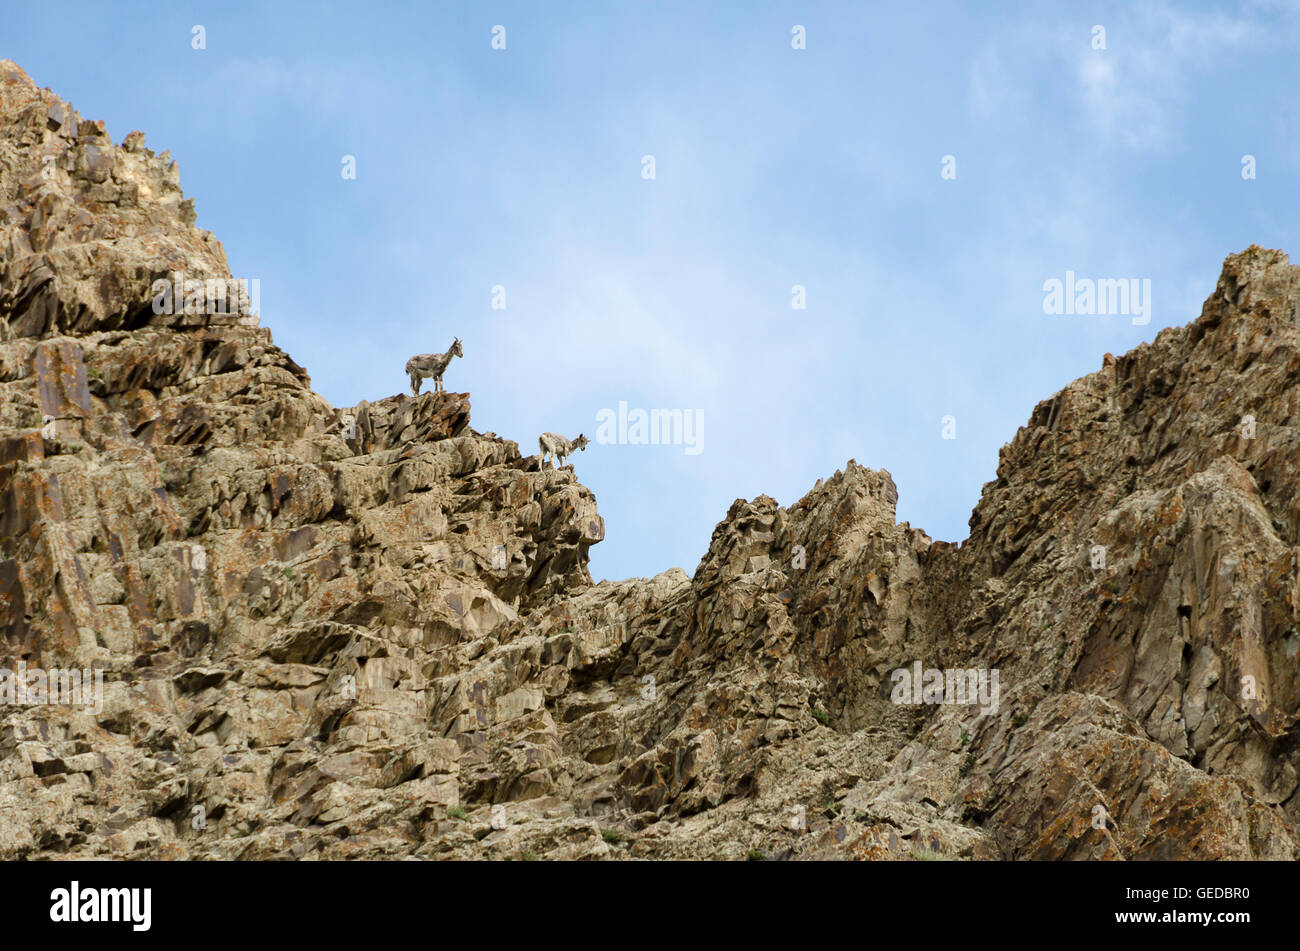 L'Himalayan pecora blu sul versante roccioso, Hankar, Markha Valley, Ladakh, Jammu e Kashmir India Foto Stock